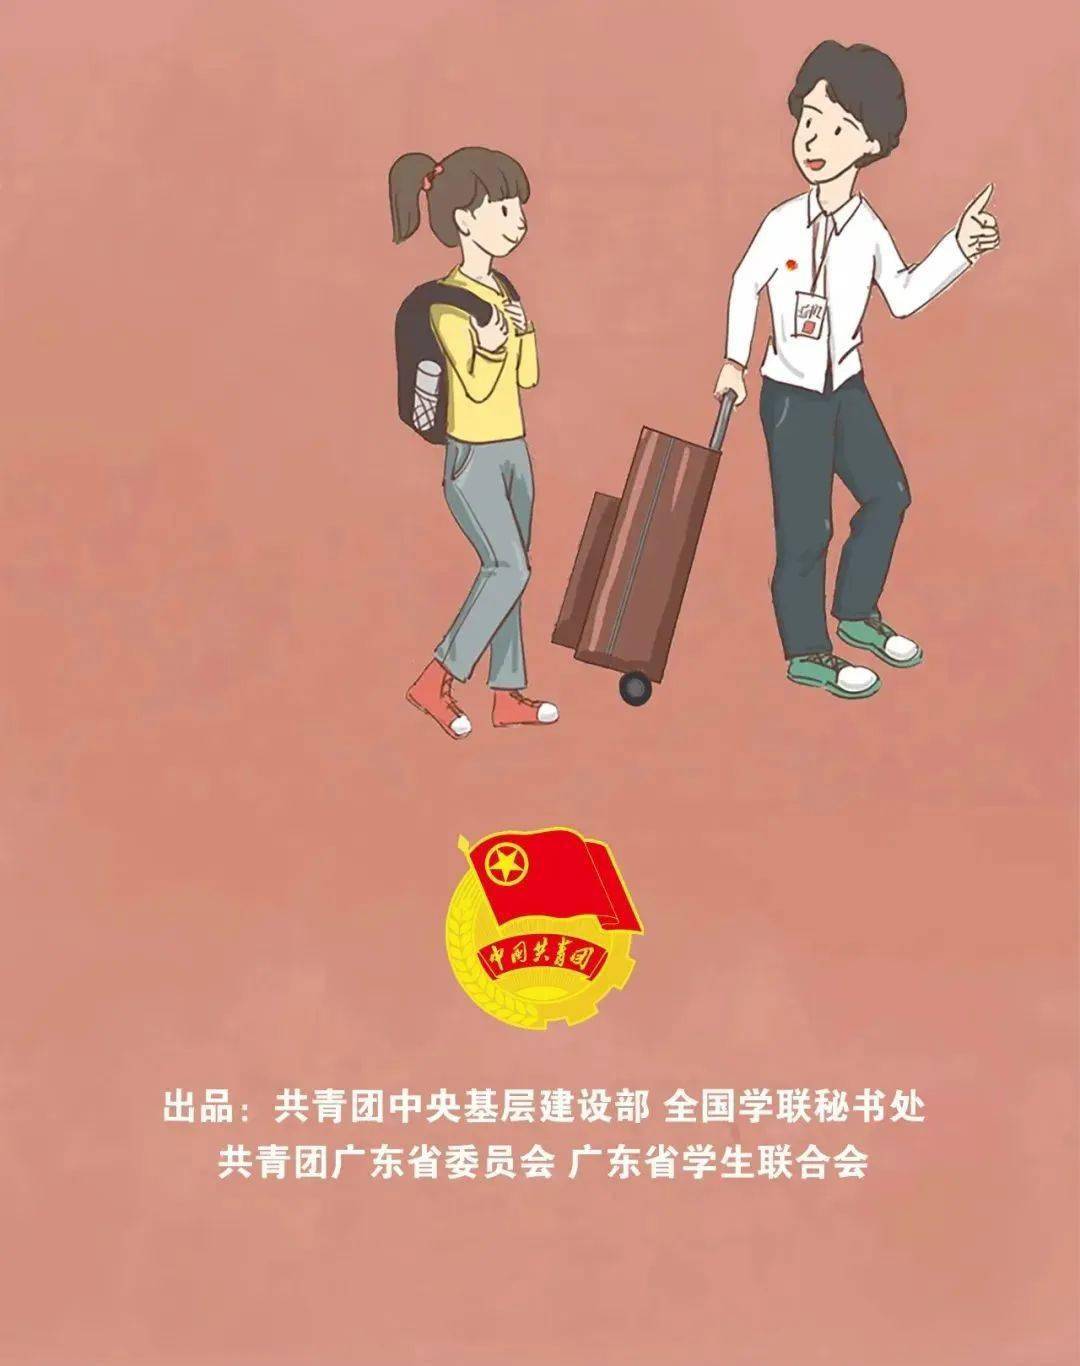 广西桂林灵川县：“甘棠雁归”让青年学子实现与家乡的“双向奔赴” v3.52.4.33官方正式版